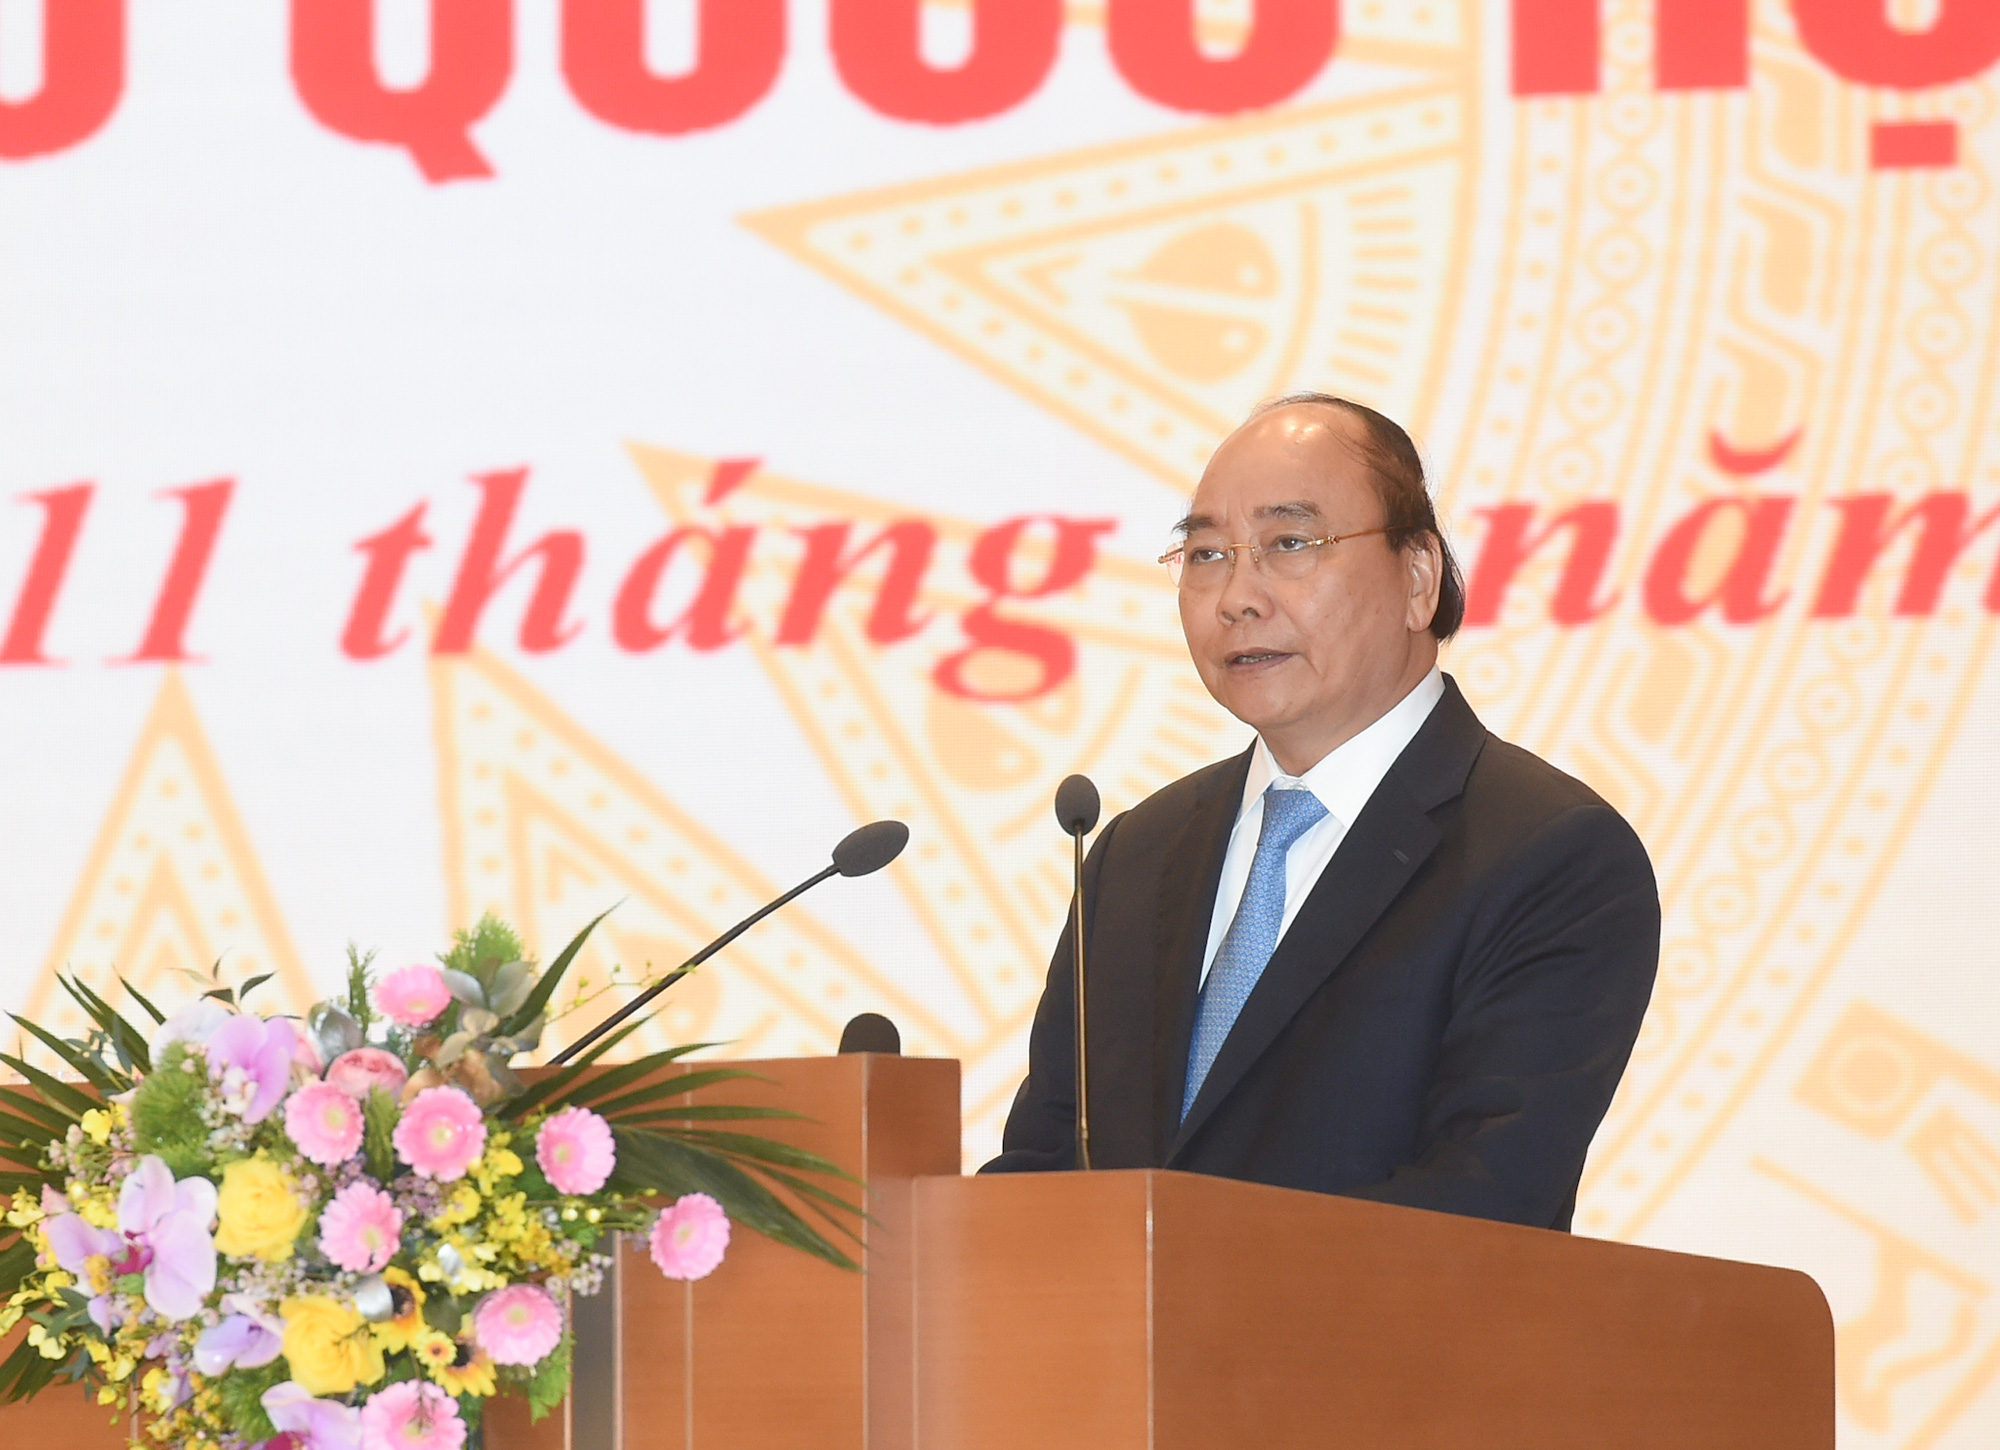 Văn phòng Chính phủ giới thiệu Thủ tướng Nguyễn Xuân Phúc và Phó Thủ tướng Phạm Bình Minh ứng cử ĐBQH khóa XV - Ảnh 1.